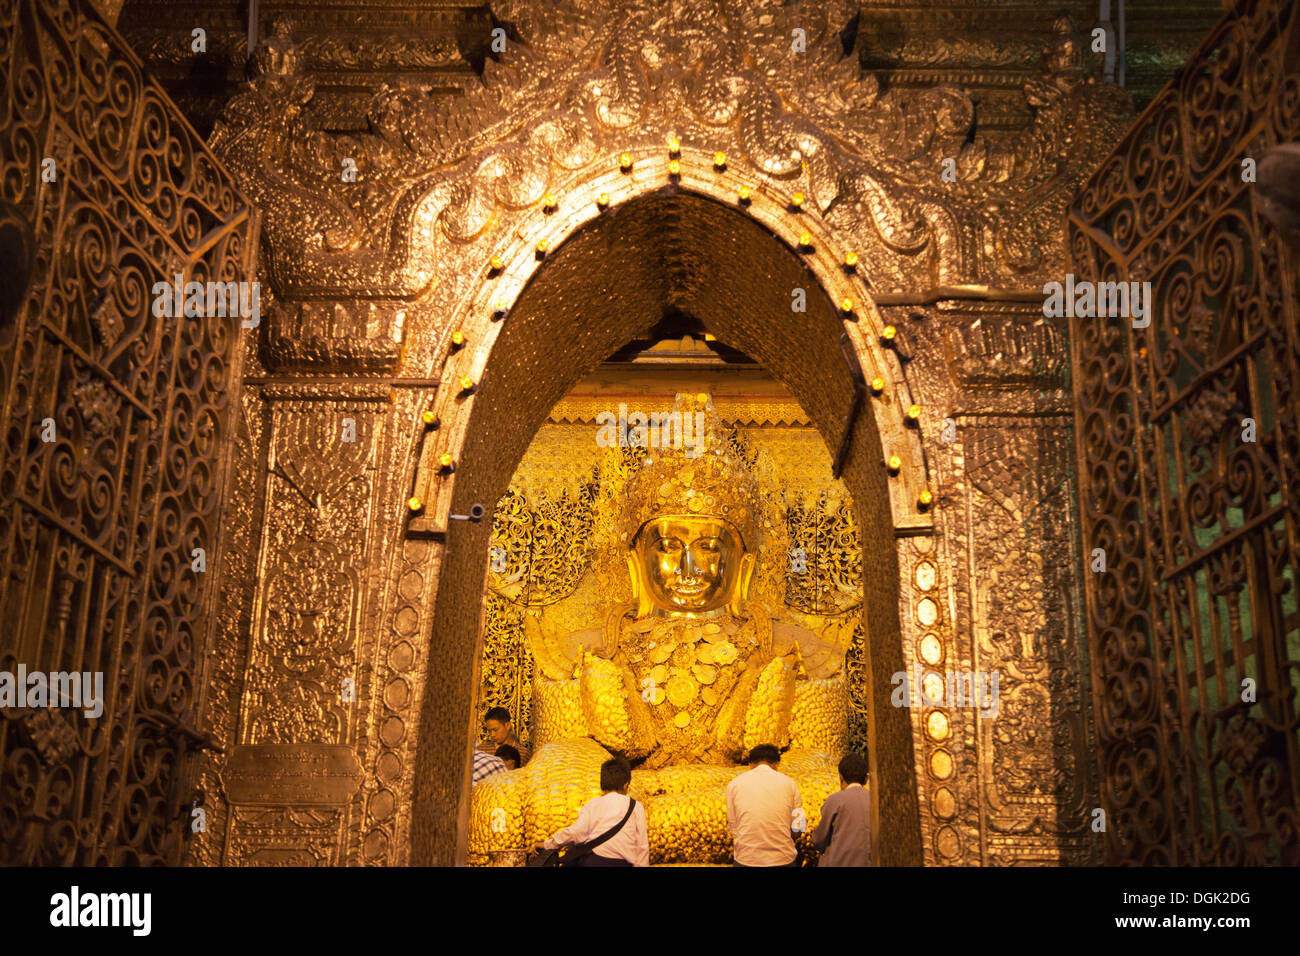 Le célèbre Bouddha incrusté de feuilles d'or dans la Pagode Mahamuni à Mandalay, au Myanmar. Banque D'Images